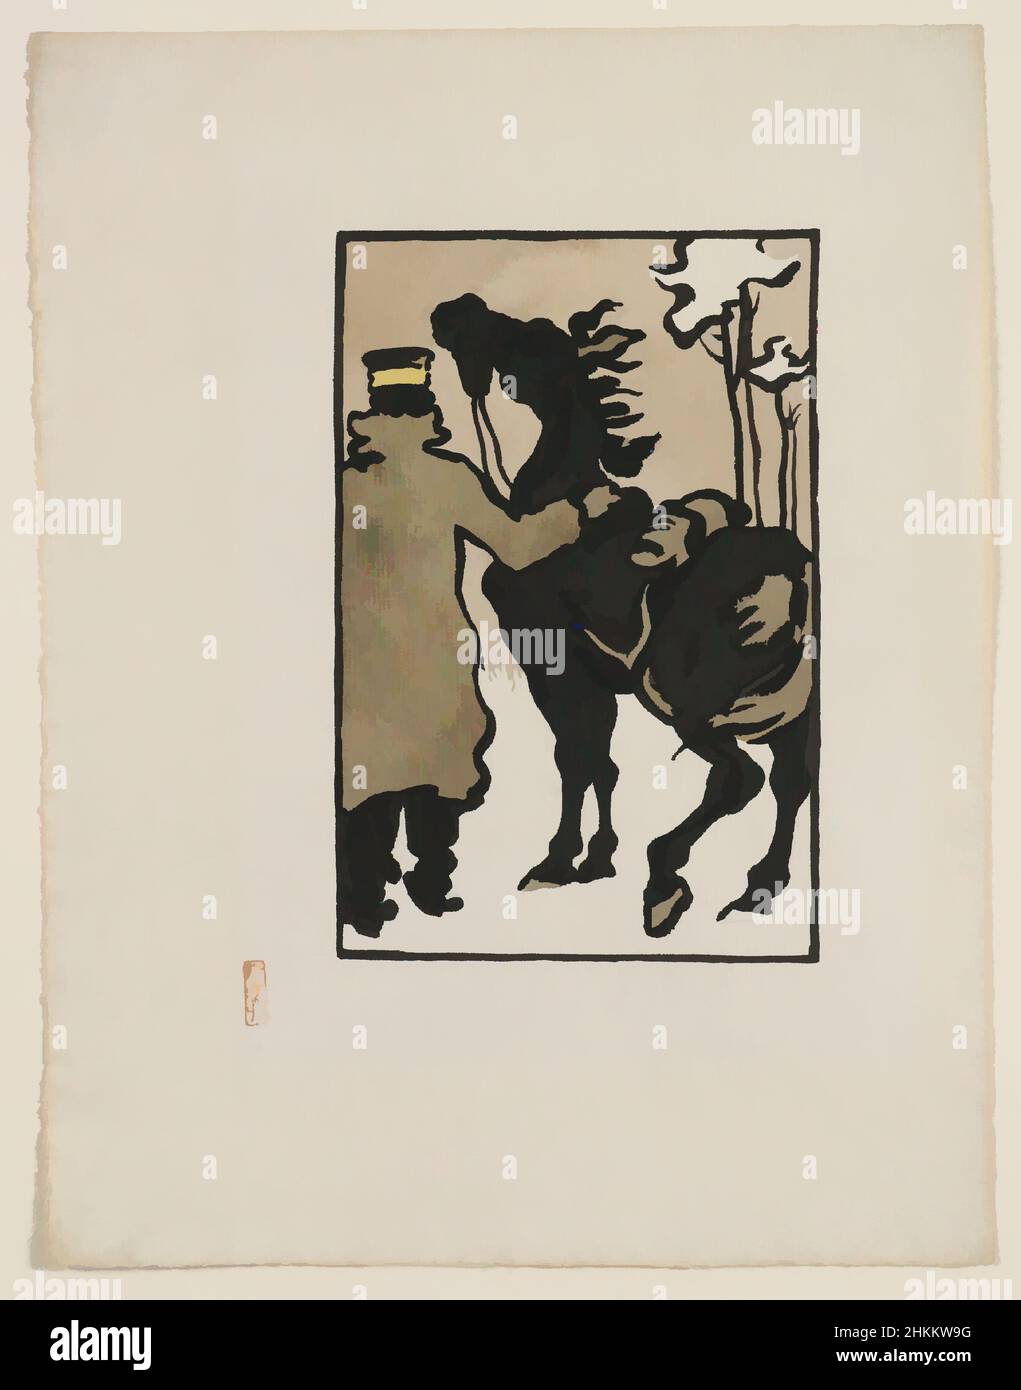 Kunst inspiriert von Einem japanischen Soldaten mit einem Pferd im Schnee, Hashiguchi Goyō, Japanisch, 1880-1921, Meiji-Zeit, 1868-1912, ca. 1904, Tinte auf Papier, hergestellt in Japan, Asien, Zeichnungen und Aquarelle, Blatt: 12 3/8 × 9 1/2 Zoll (31,4 × 24,1 cm, Classic Works modernisiert von Artotop mit einem Schuss Moderne. Formen, Farbe und Wert, auffällige visuelle Wirkung auf Kunst. Emotionen durch Freiheit von Kunstwerken auf zeitgemäße Weise. Eine zeitlose Botschaft, die eine wild kreative neue Richtung verfolgt. Künstler, die sich dem digitalen Medium zuwenden und die Artotop NFT erschaffen Stockfoto